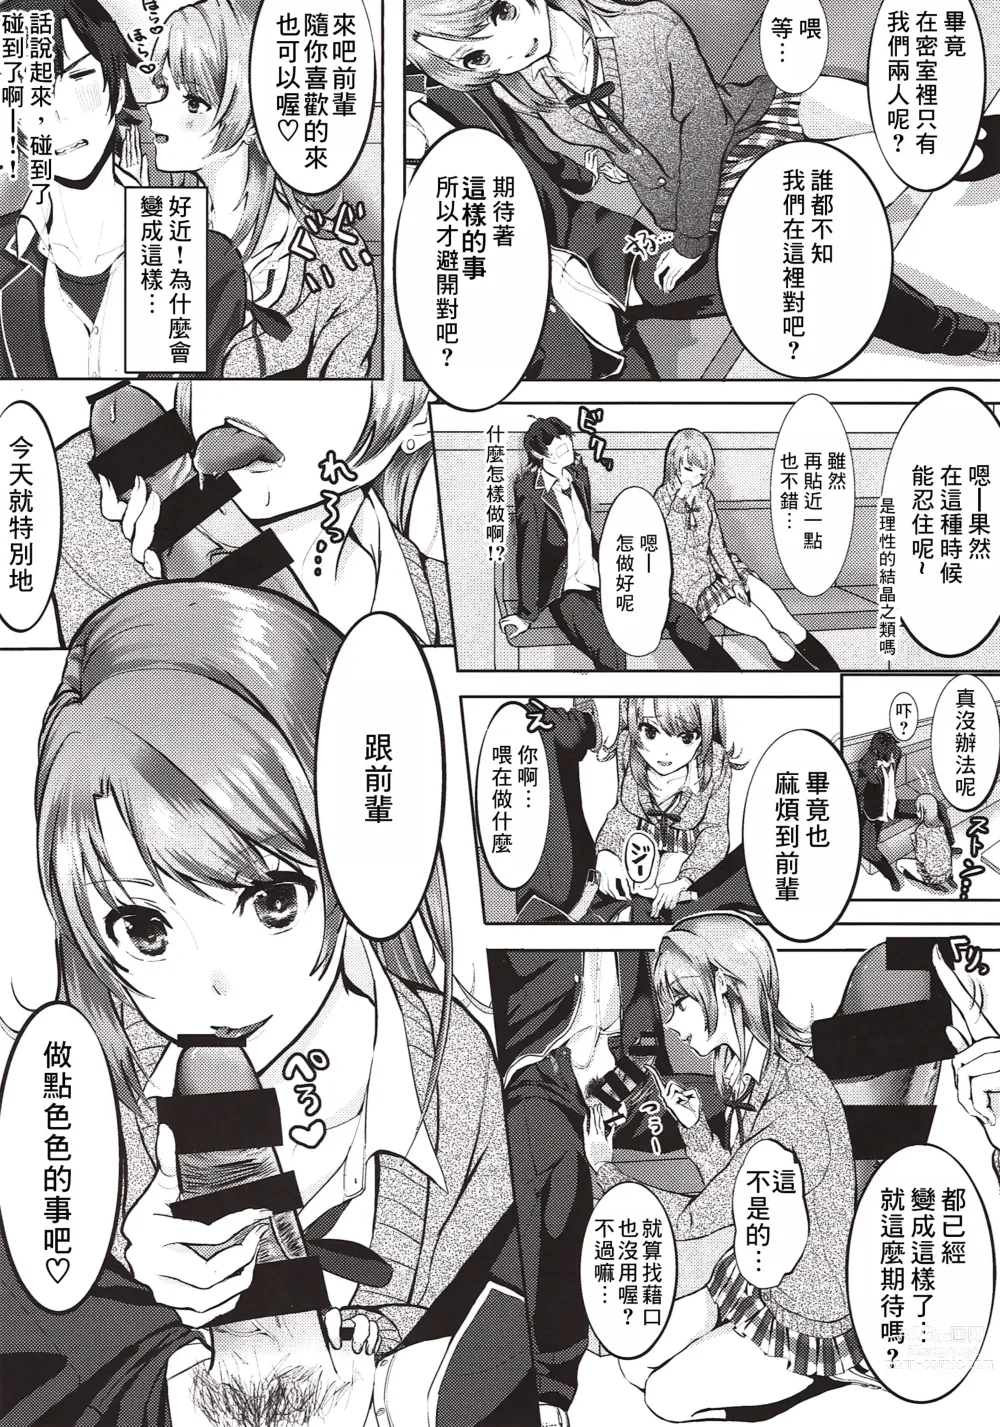 Page 3 of doujinshi Irohasuto!